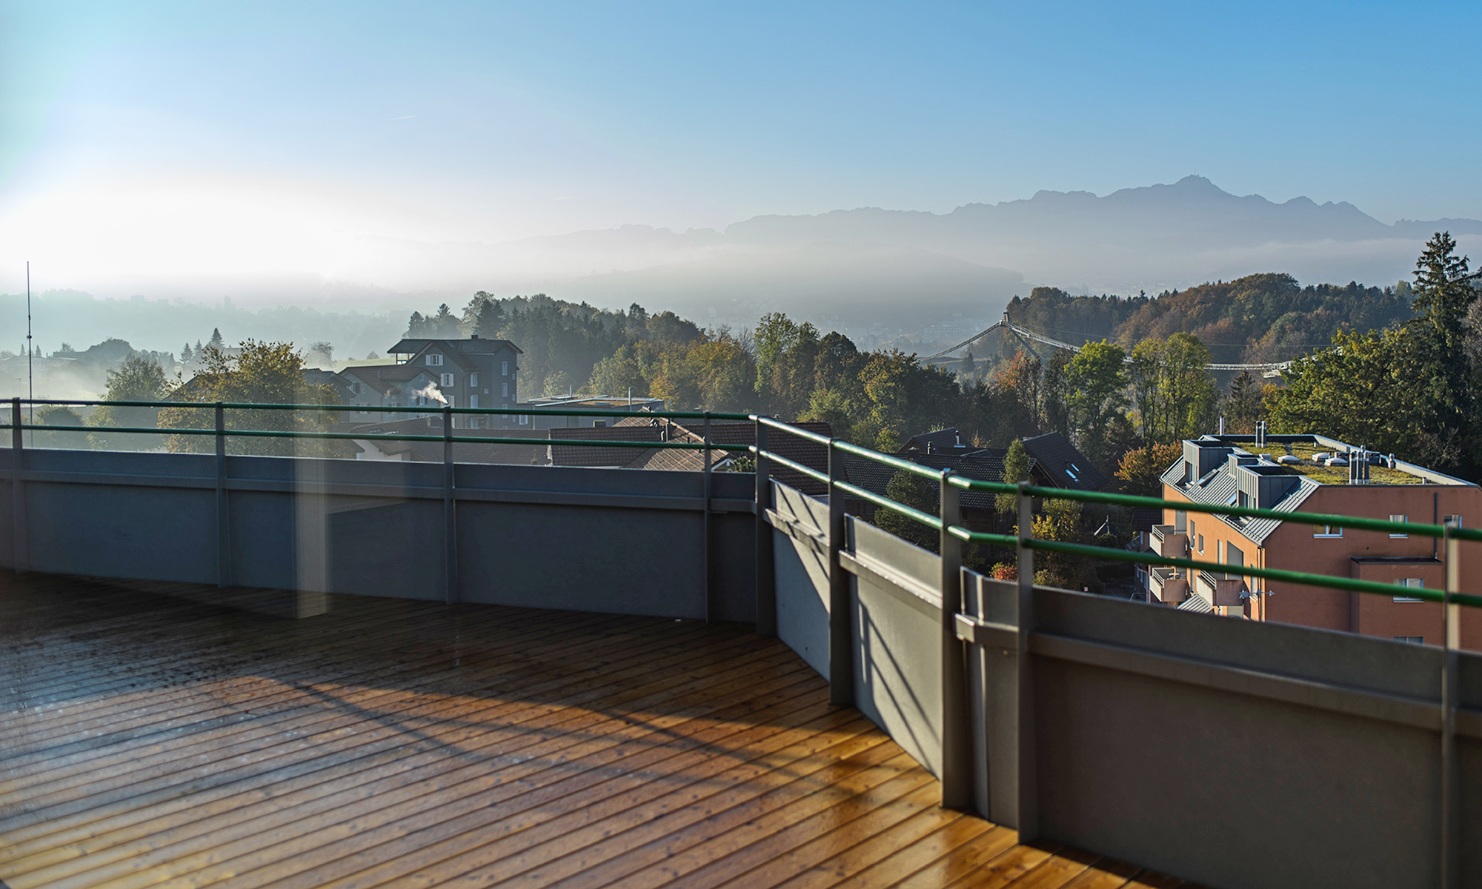 Prise de vue sur le toit-terrasse avec plancher en bois d’un immeuble collectif Berg, avec une vue spectaculaire sur les toits des maisons et une vue panoramique sur les montagnes